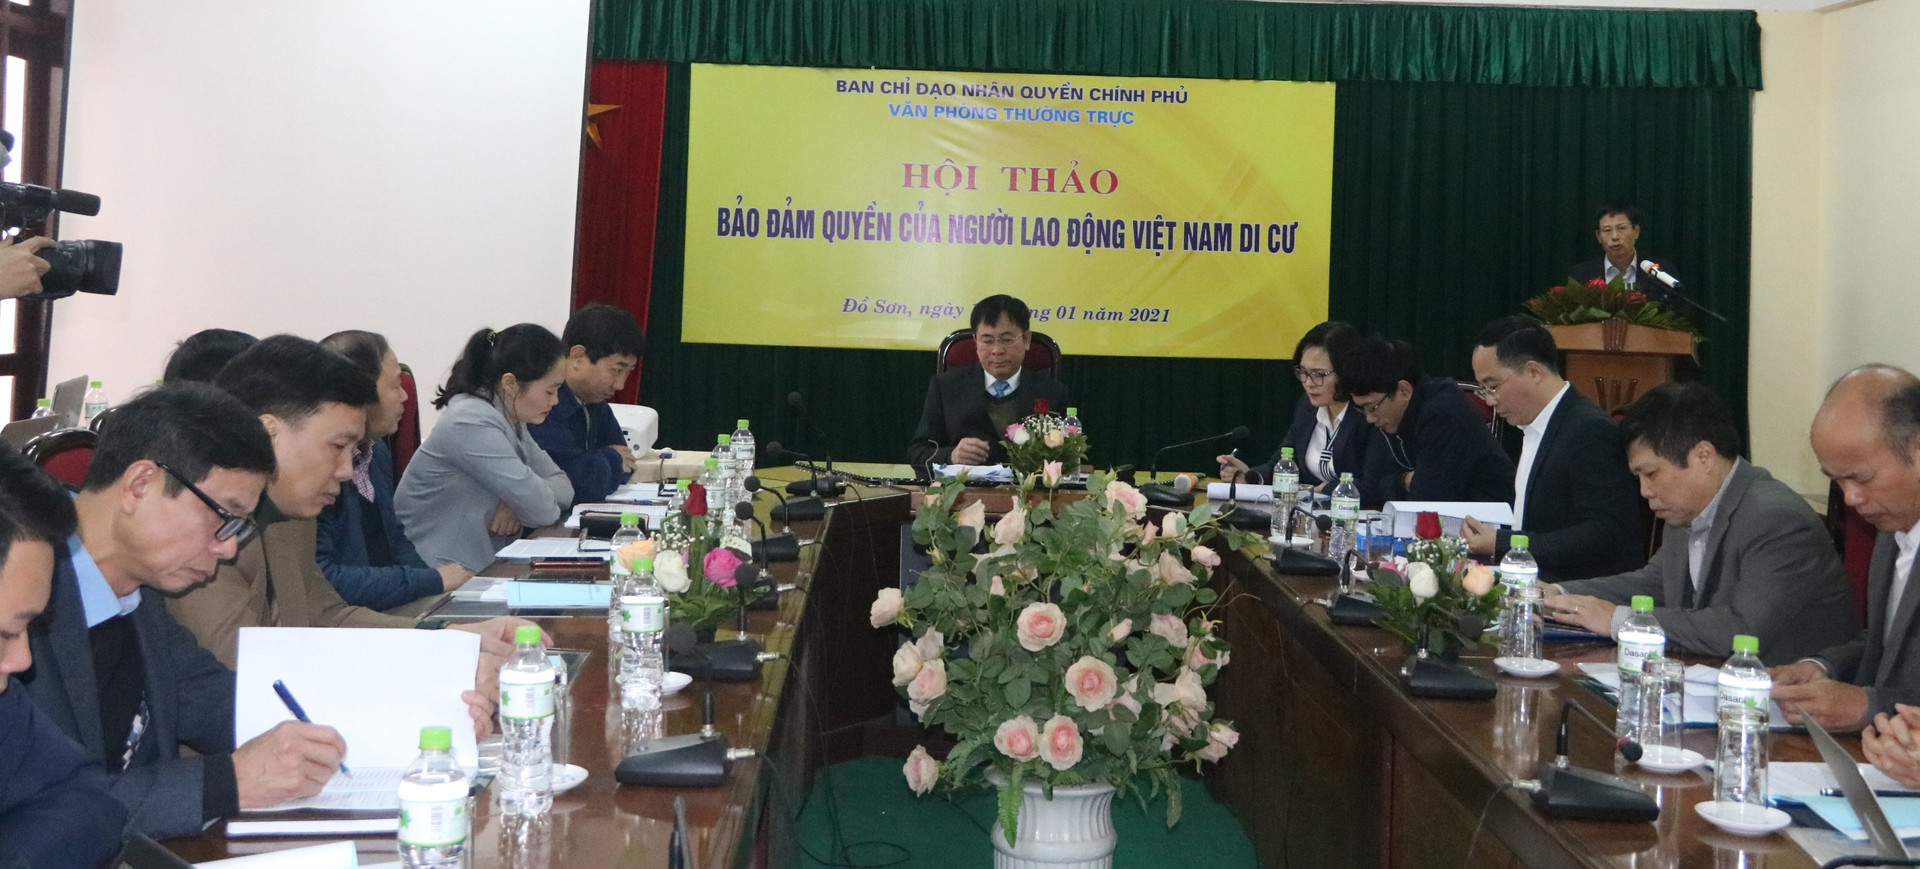 Quang cảnh hội thảo Đảm bảo quyền của người lao động Việt Nam di cư tổ chức tại TP Hải Phòng 